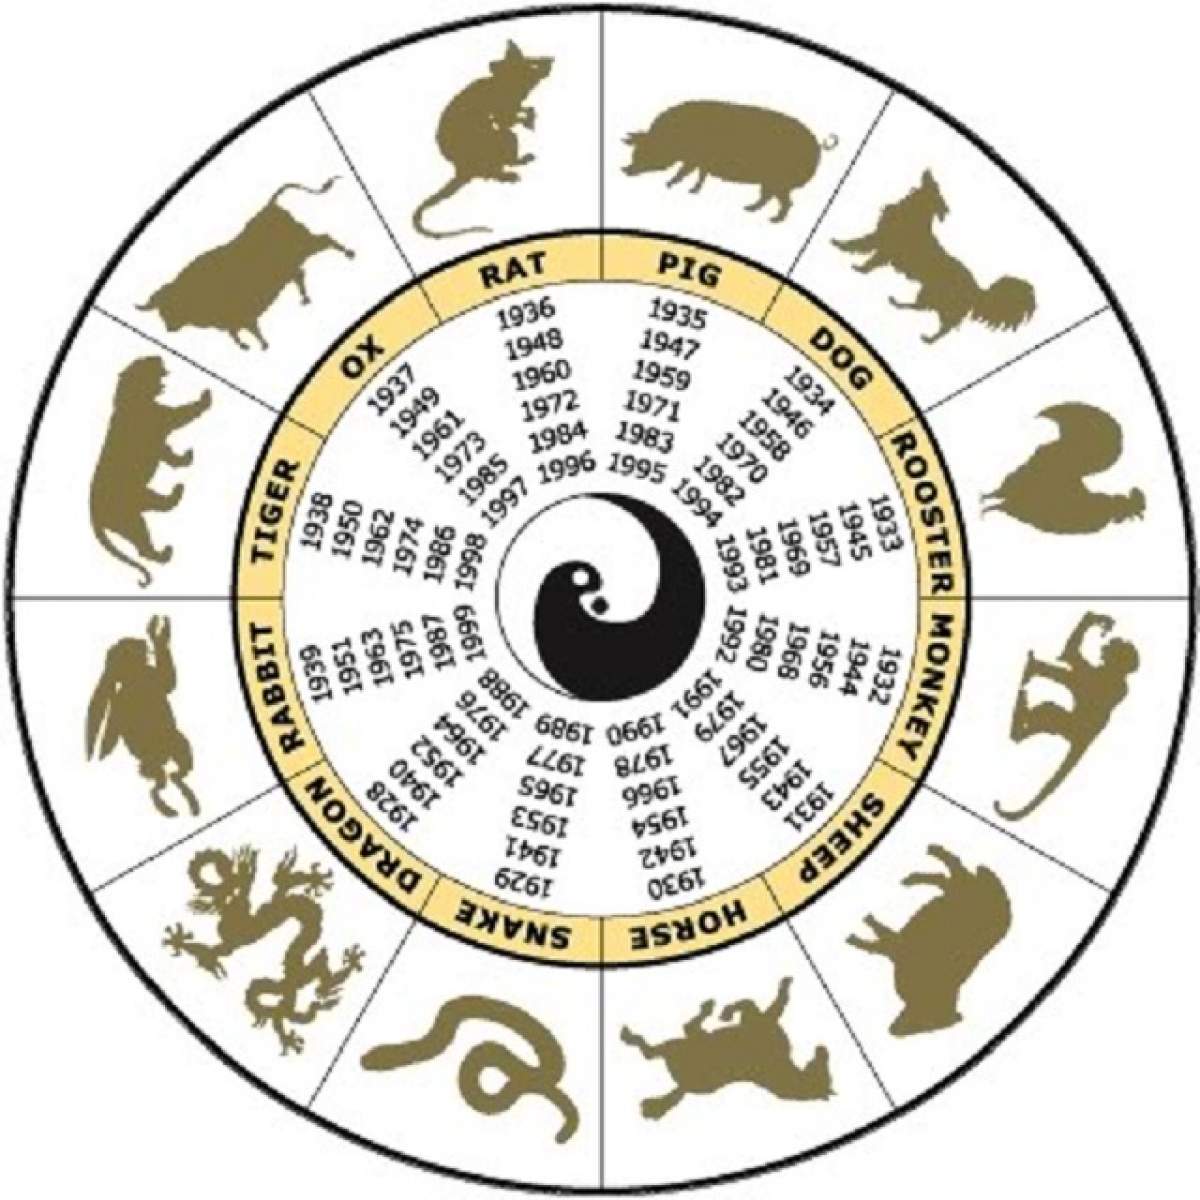 Trecem în Anul Nou Chinezesc! Ce aduce Capra de Lemn pentru fiecare semn zodiacal